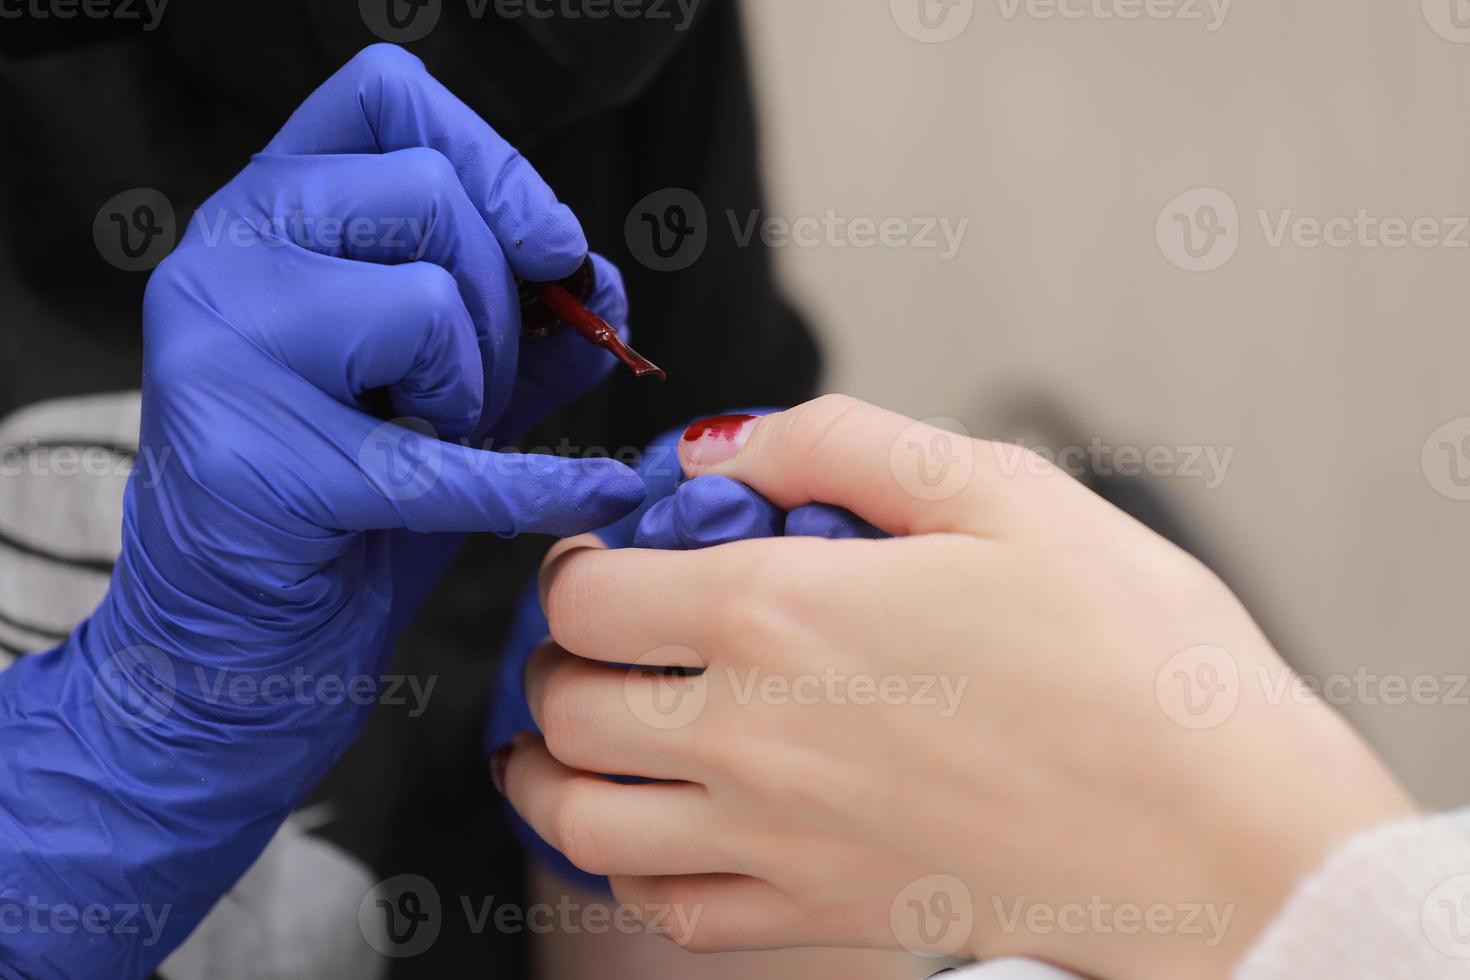 meester in beschermende handschoenen tijdens een manicure bij schoonheidssalon. meester-manicurist vernist de marsala-gel op de nagels van een vrouwelijke cliënt. het concept van schoonheid en gezondheid. foto